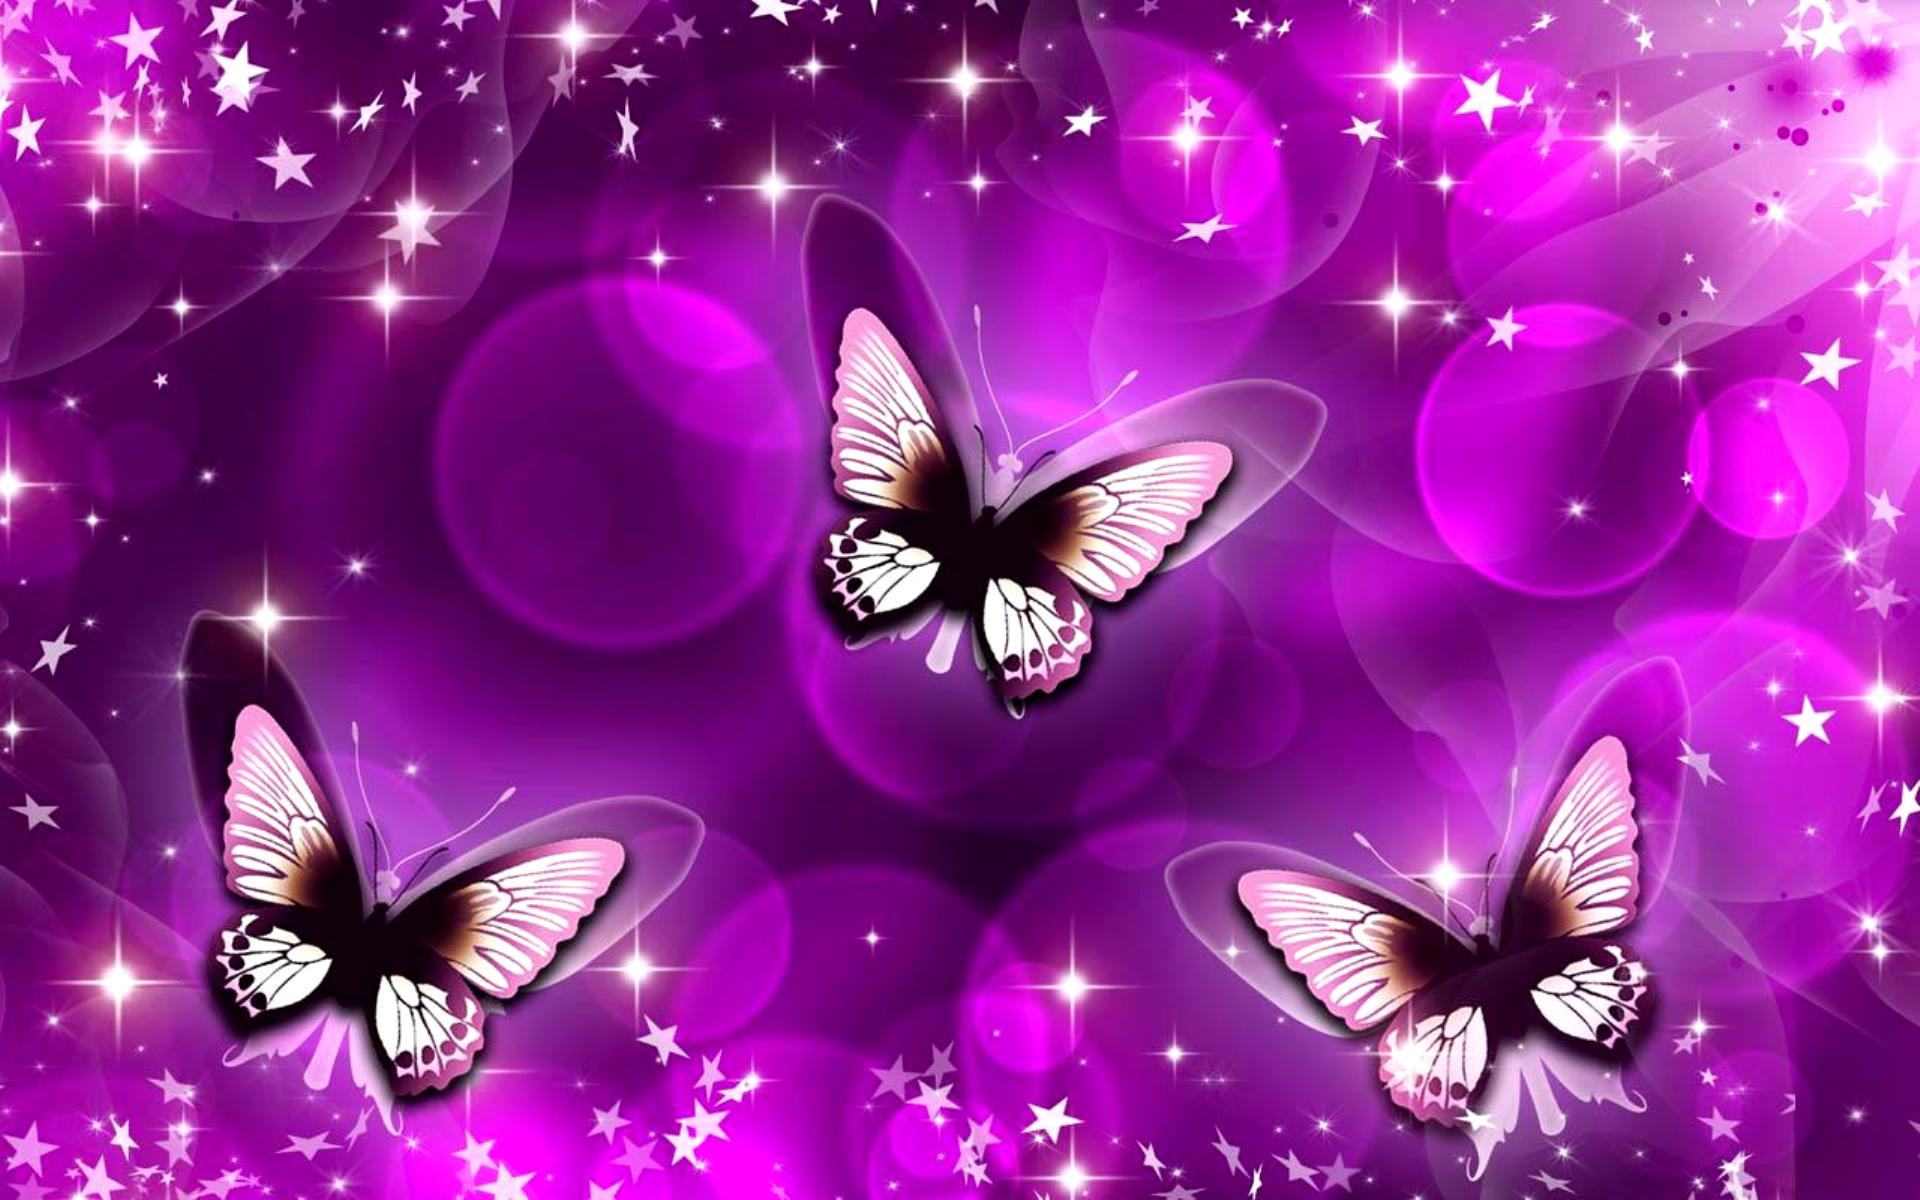 Обложка на экран телефона. Фон бабочки. Сиреневые бабочки. Обои с бабочками. Бабочки фото.